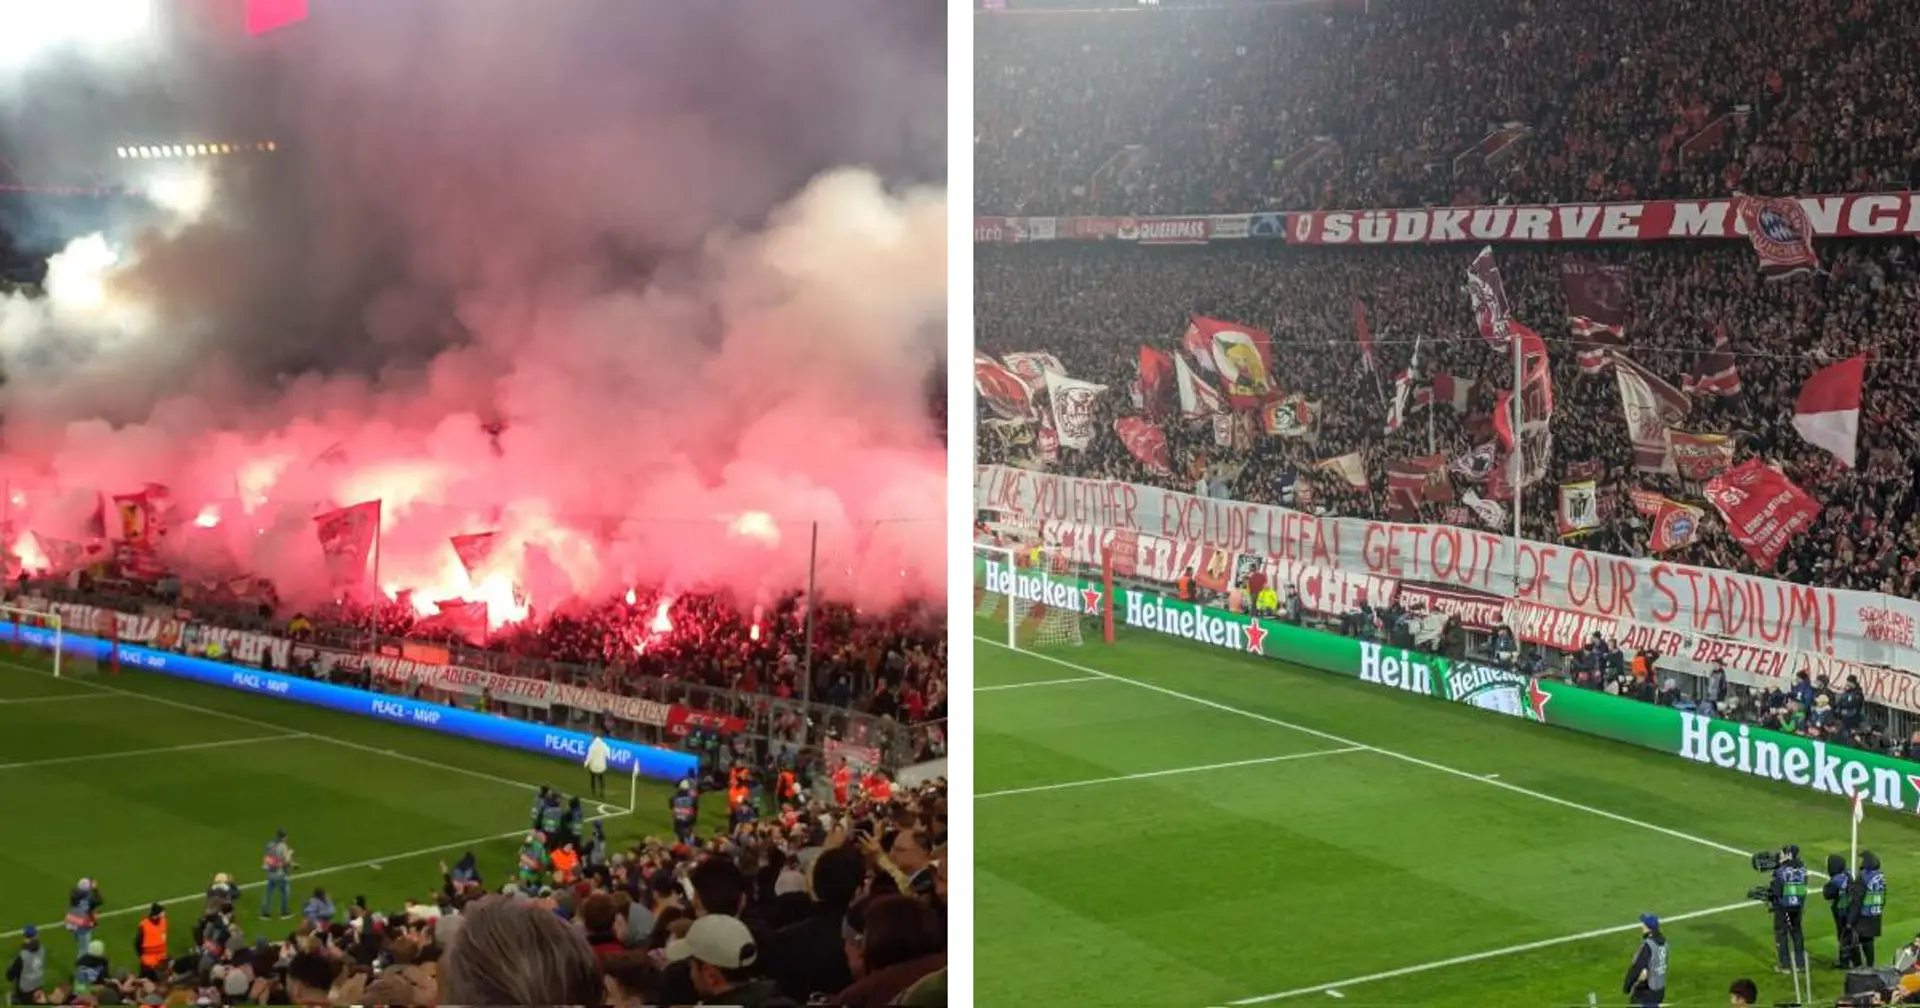 "UEFA ausschließen!": Bayern-Fans zeigen Mega-Pyroshow und senden klare Botschaft in der Allianz Arena